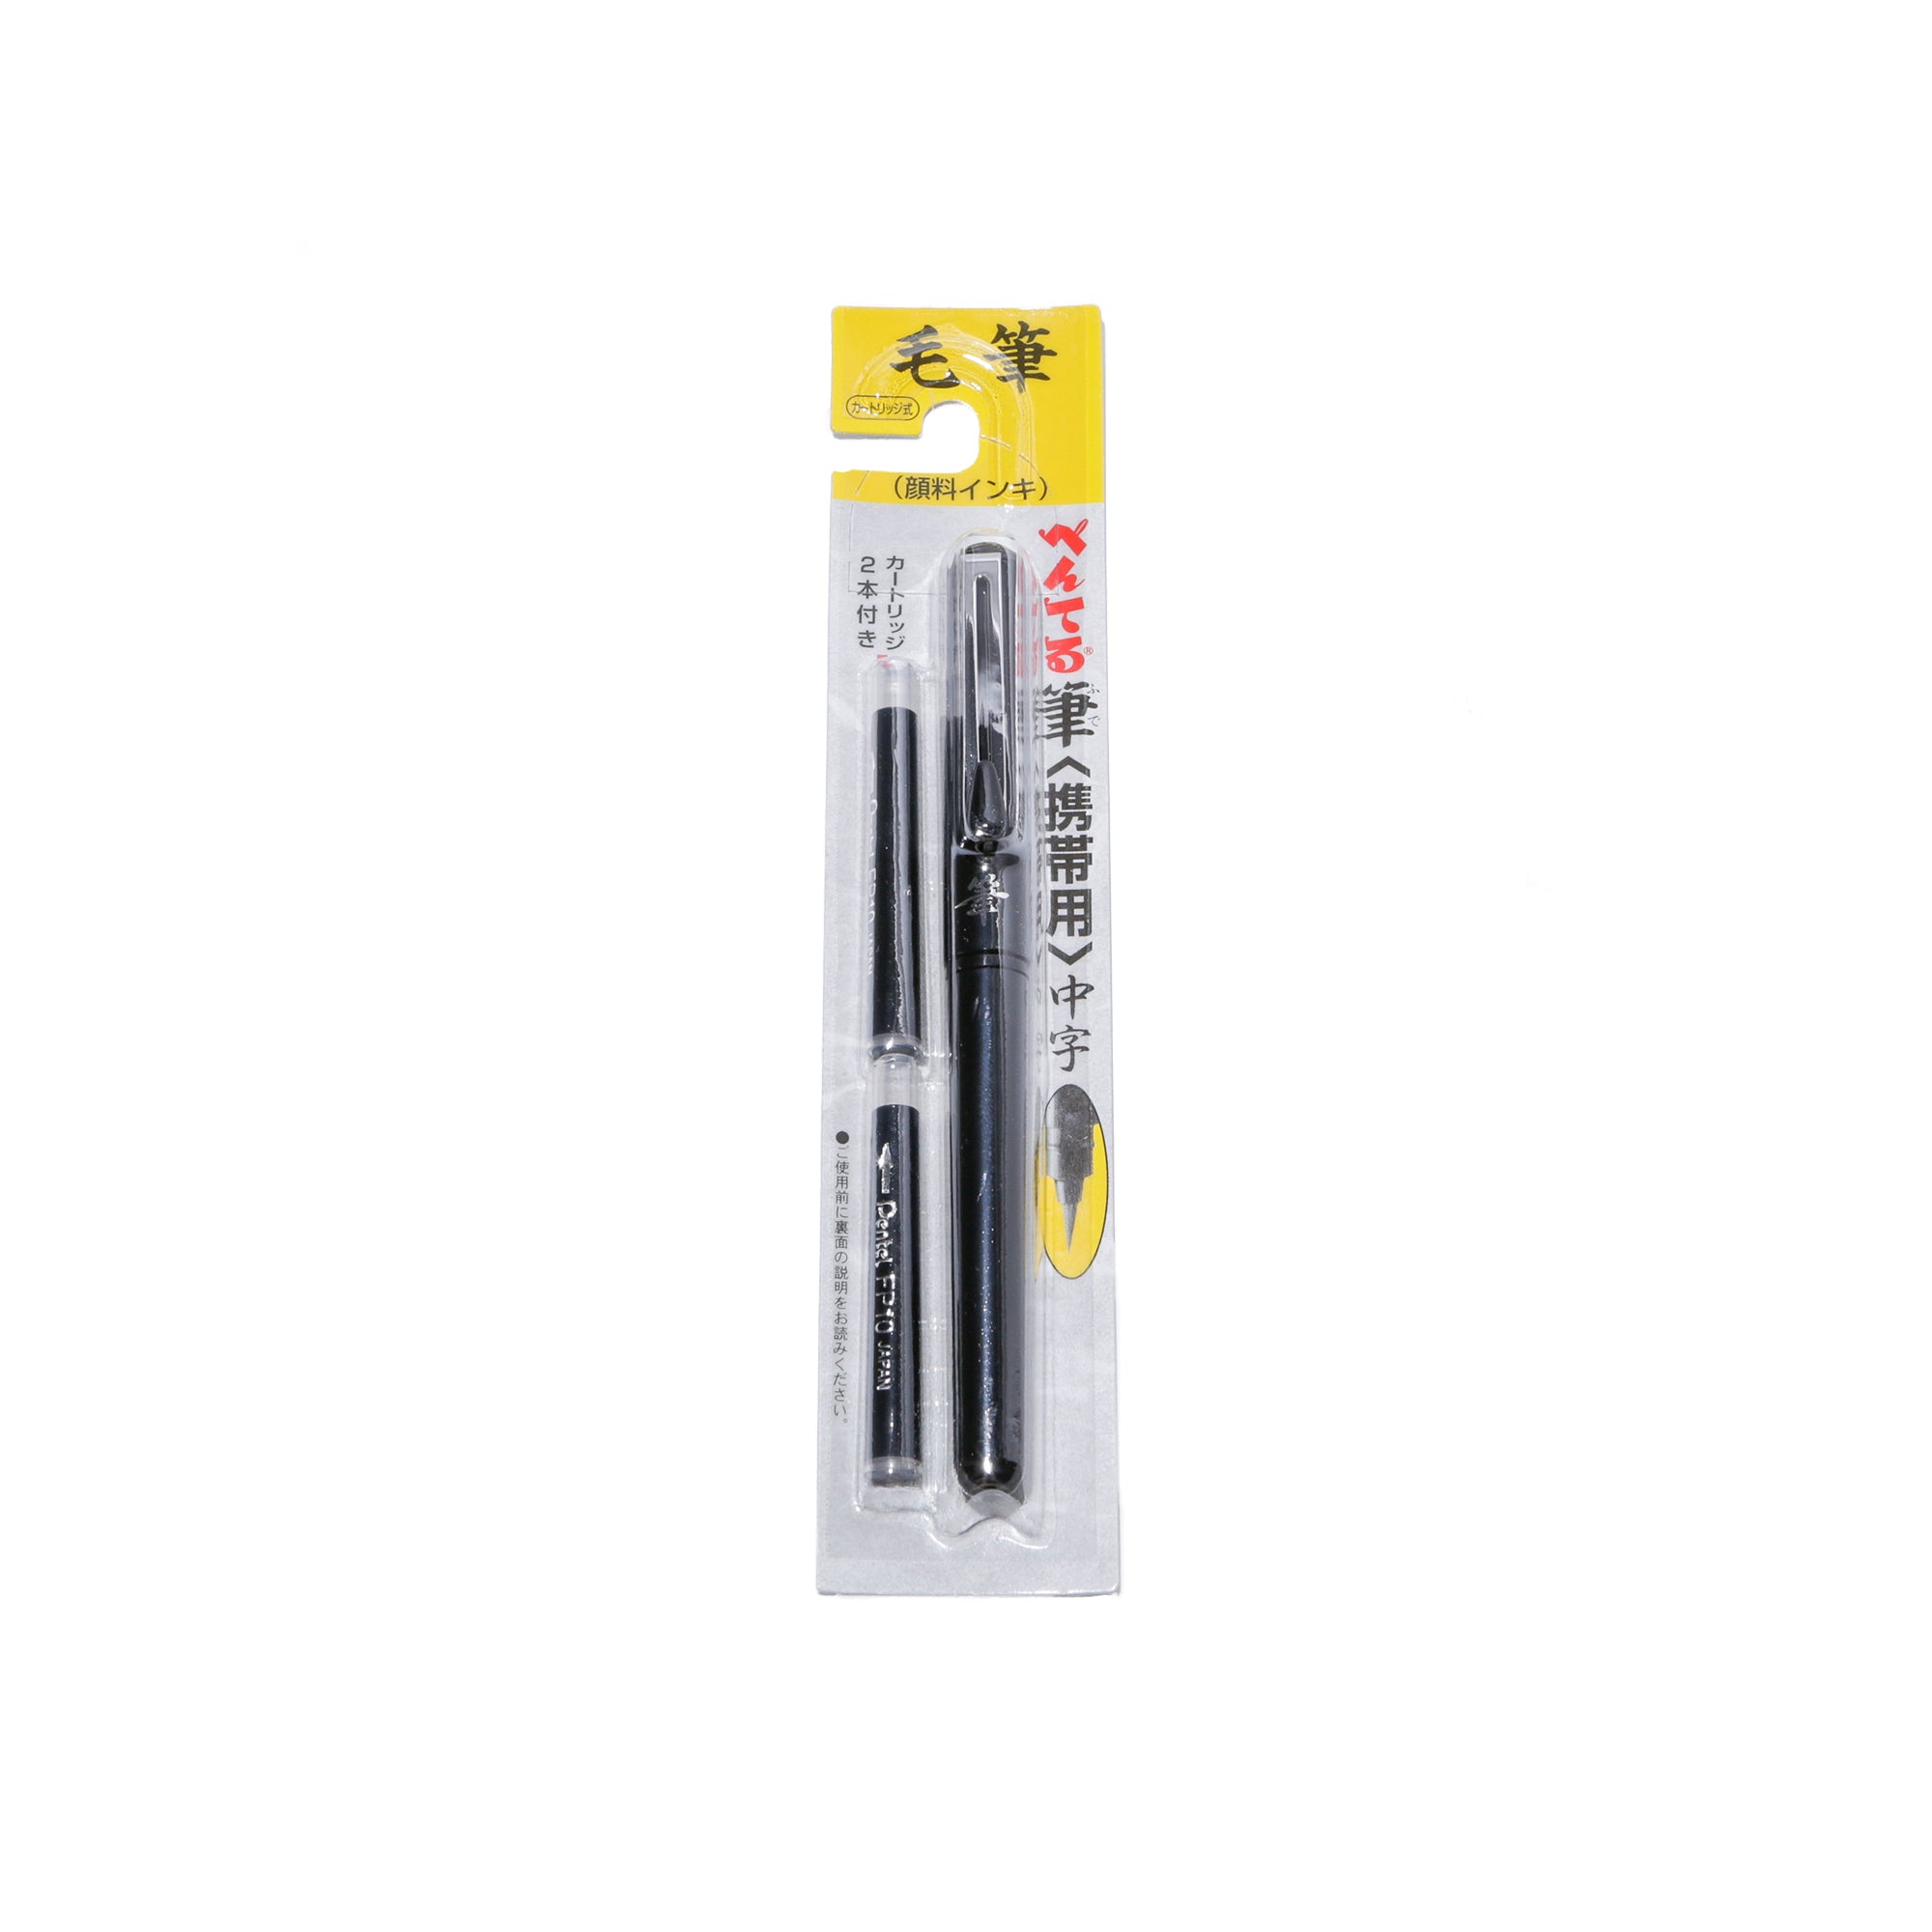 Japanese Brush Pen